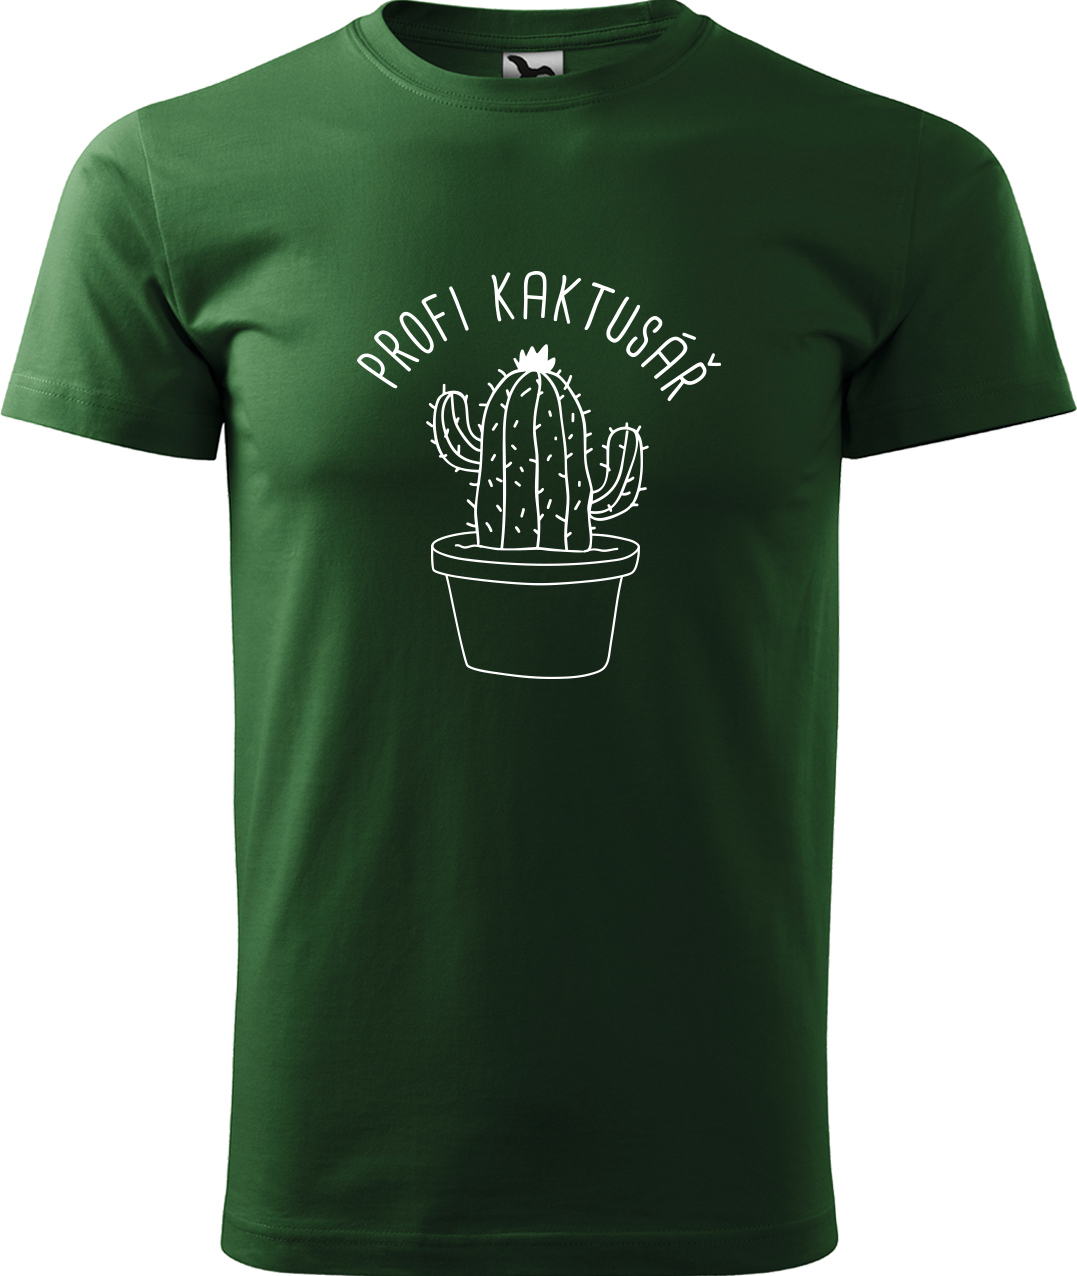 Tričko pro zahradníka - Profi kaktusář Velikost: M, Barva: Lahvově zelená (06), Střih: pánský